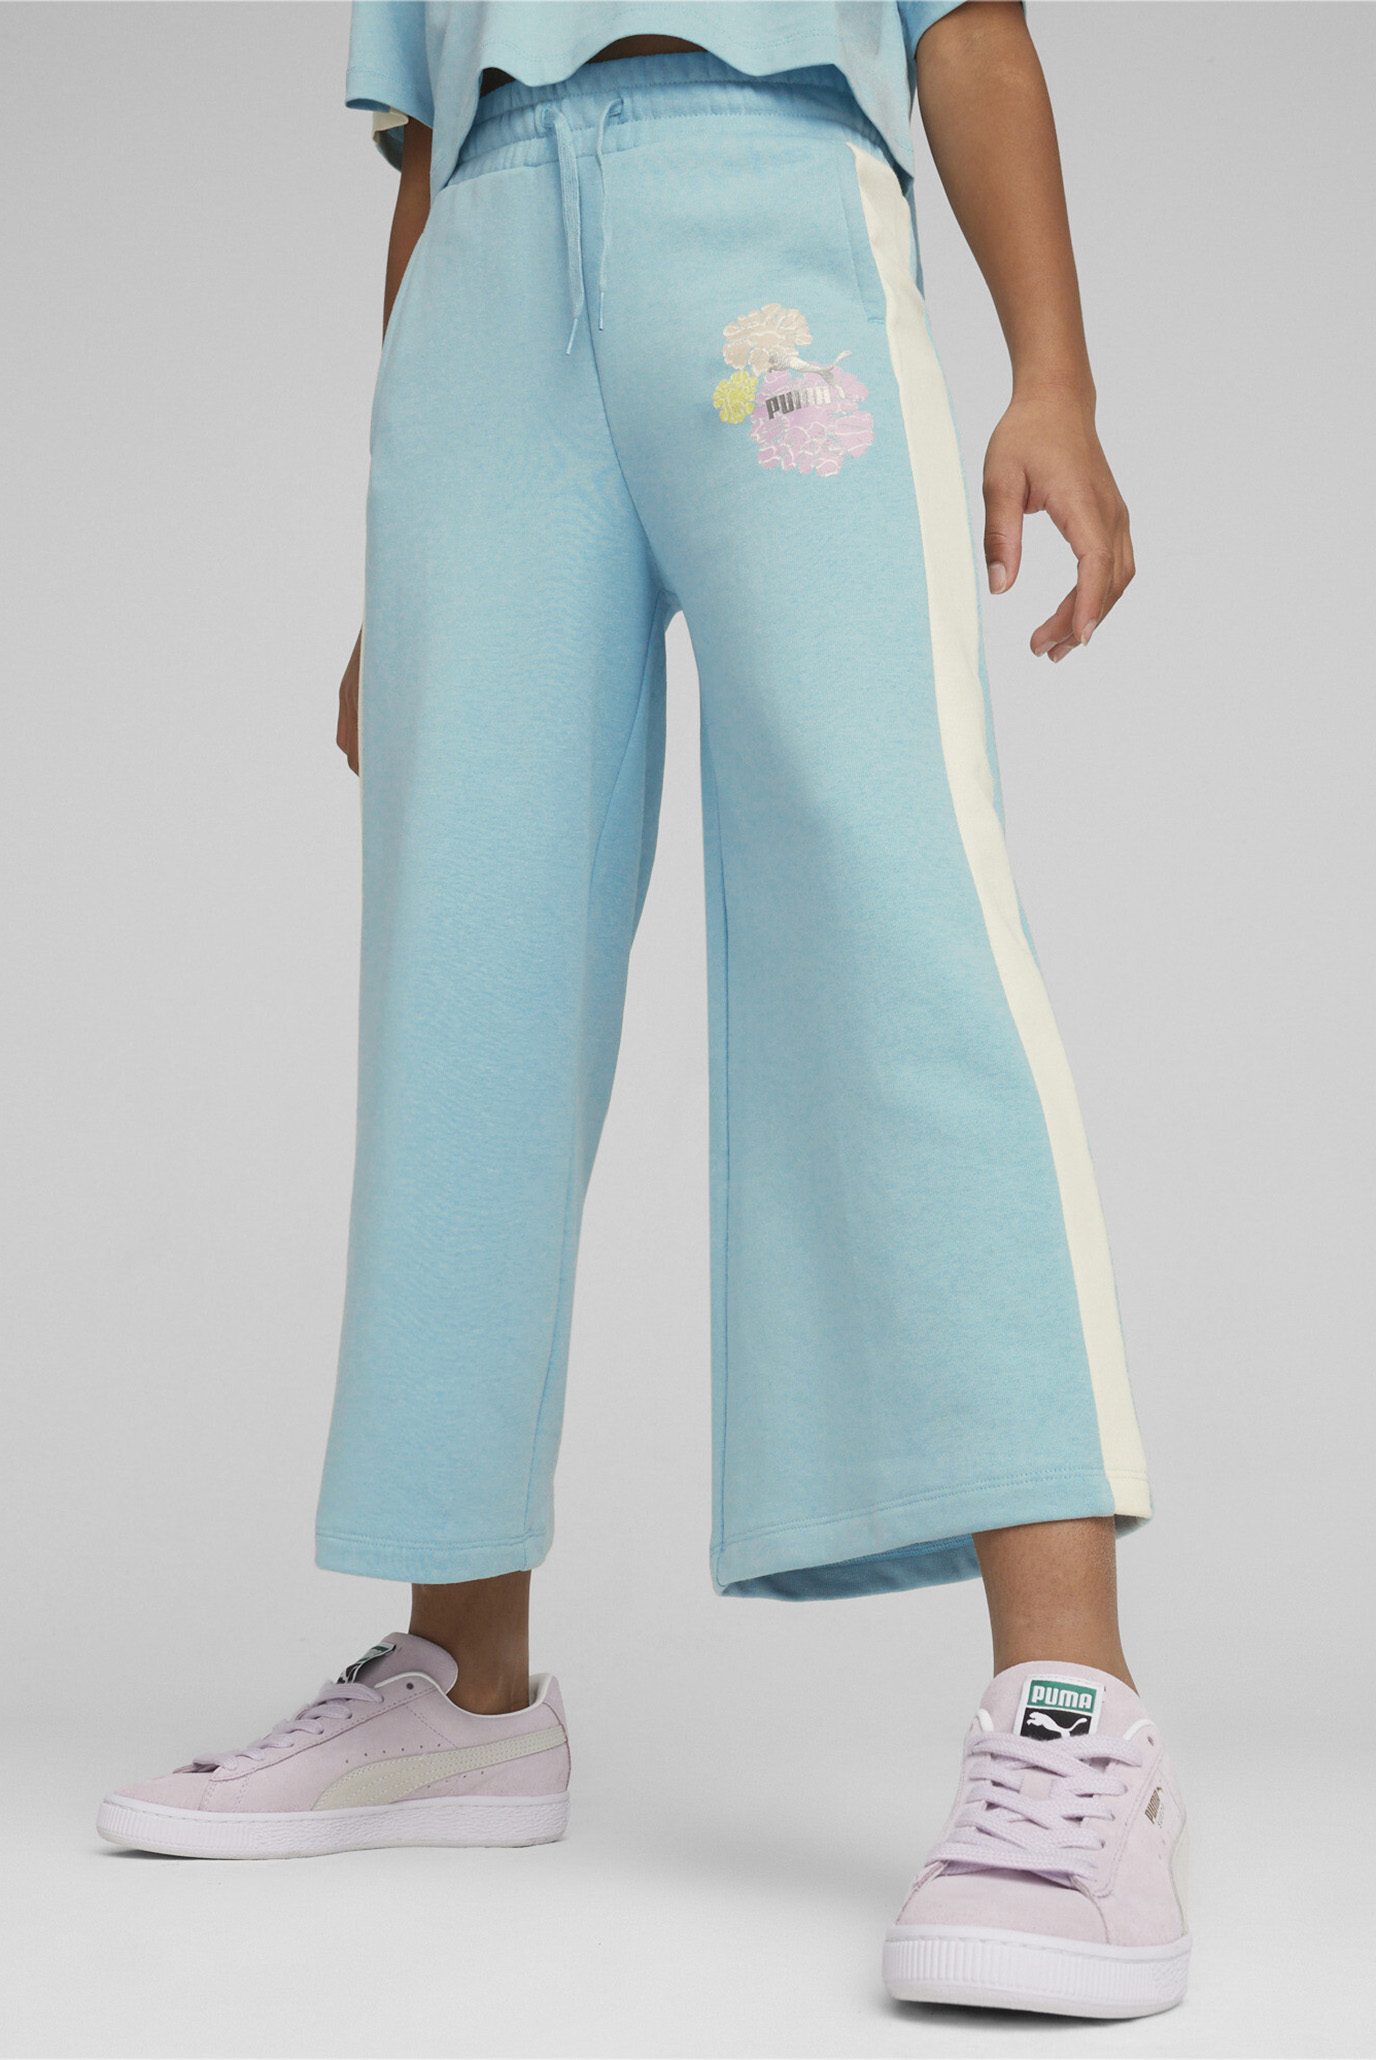 Дитячі бірюзові спортивні штани T7 SNFLR Girls' 7/8 Sweatpants 1